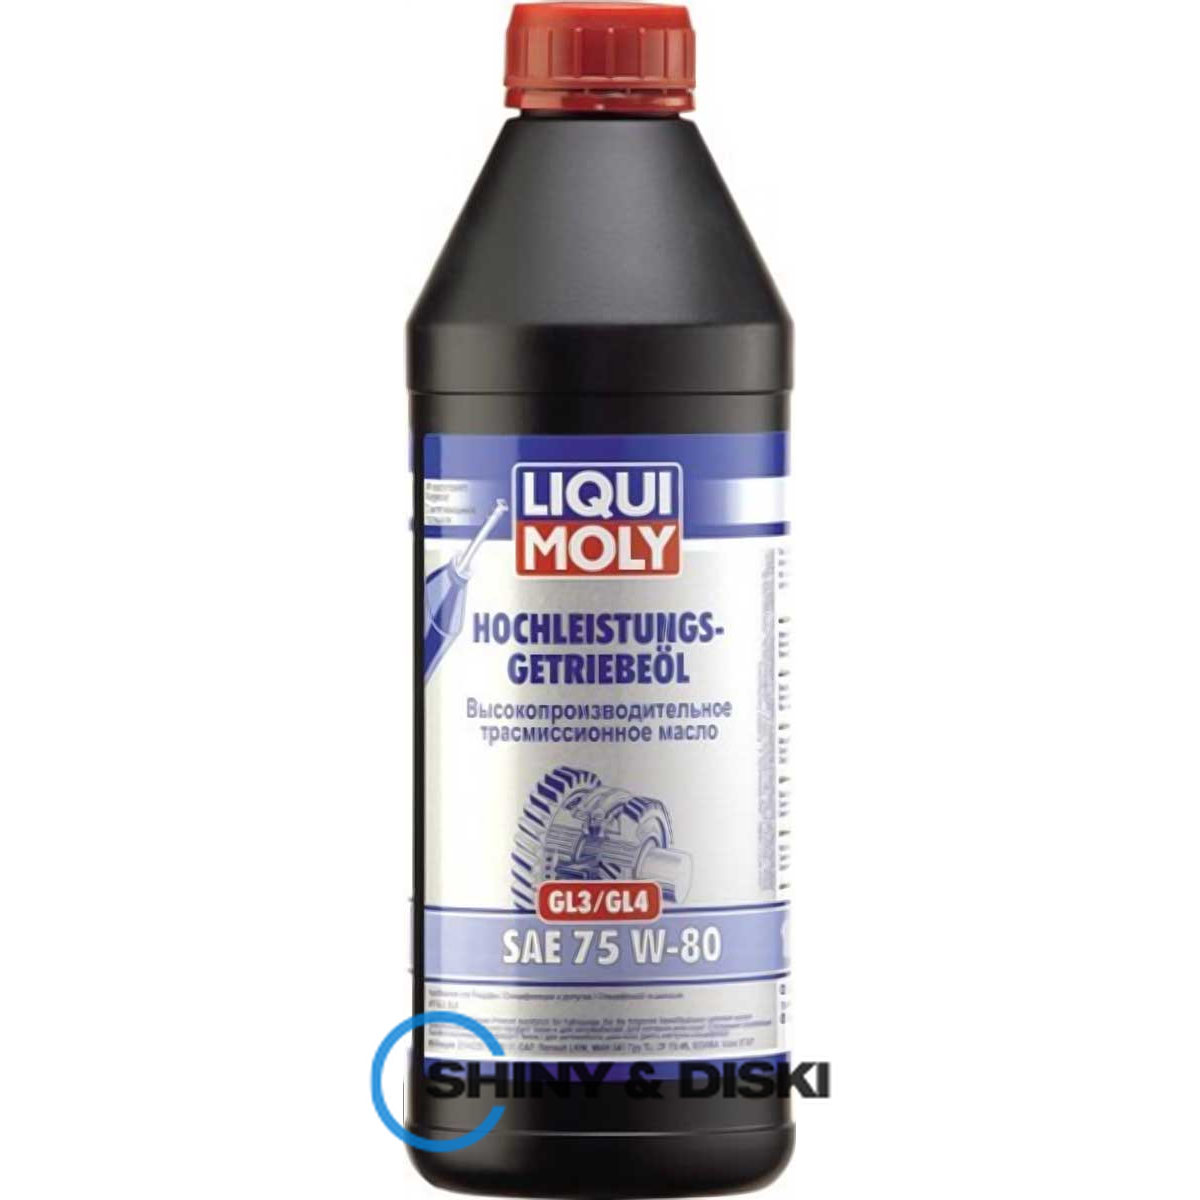 liqui moly hochleistungs-getriebeoil gl-3/gl-4 75w-80 (1л)